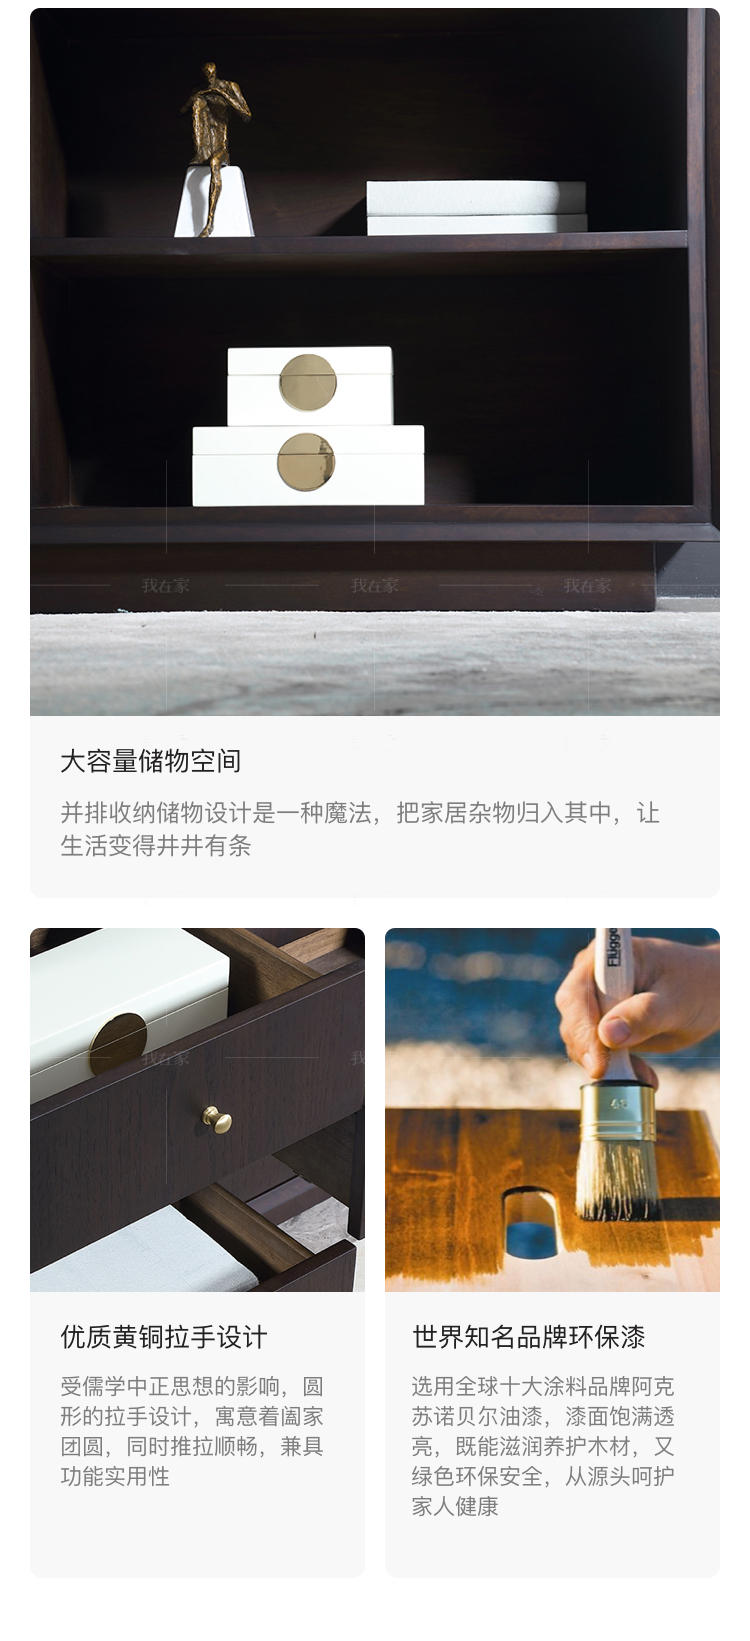 中式轻奢风格曲幽电视柜的家具详细介绍